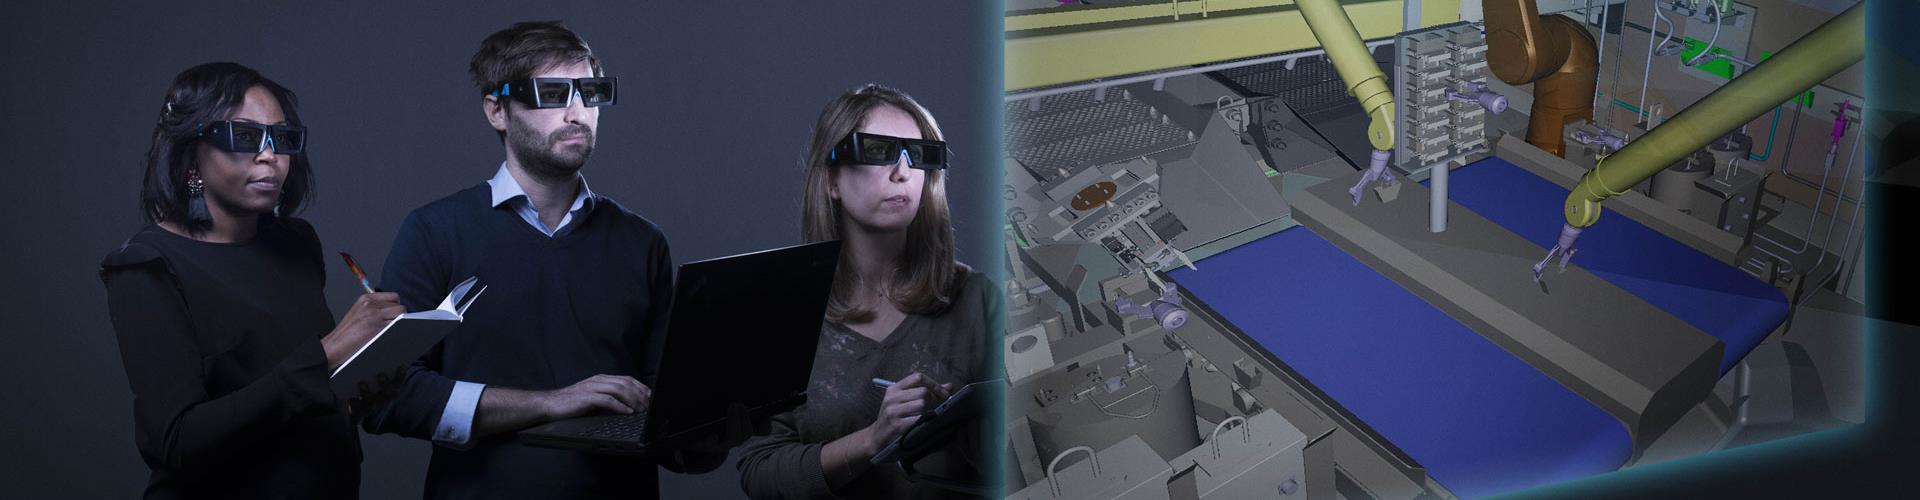 Collaborateurs utilisant la réalité augmentée afin de manipuler, observer et analyser des projets d'ingénierie